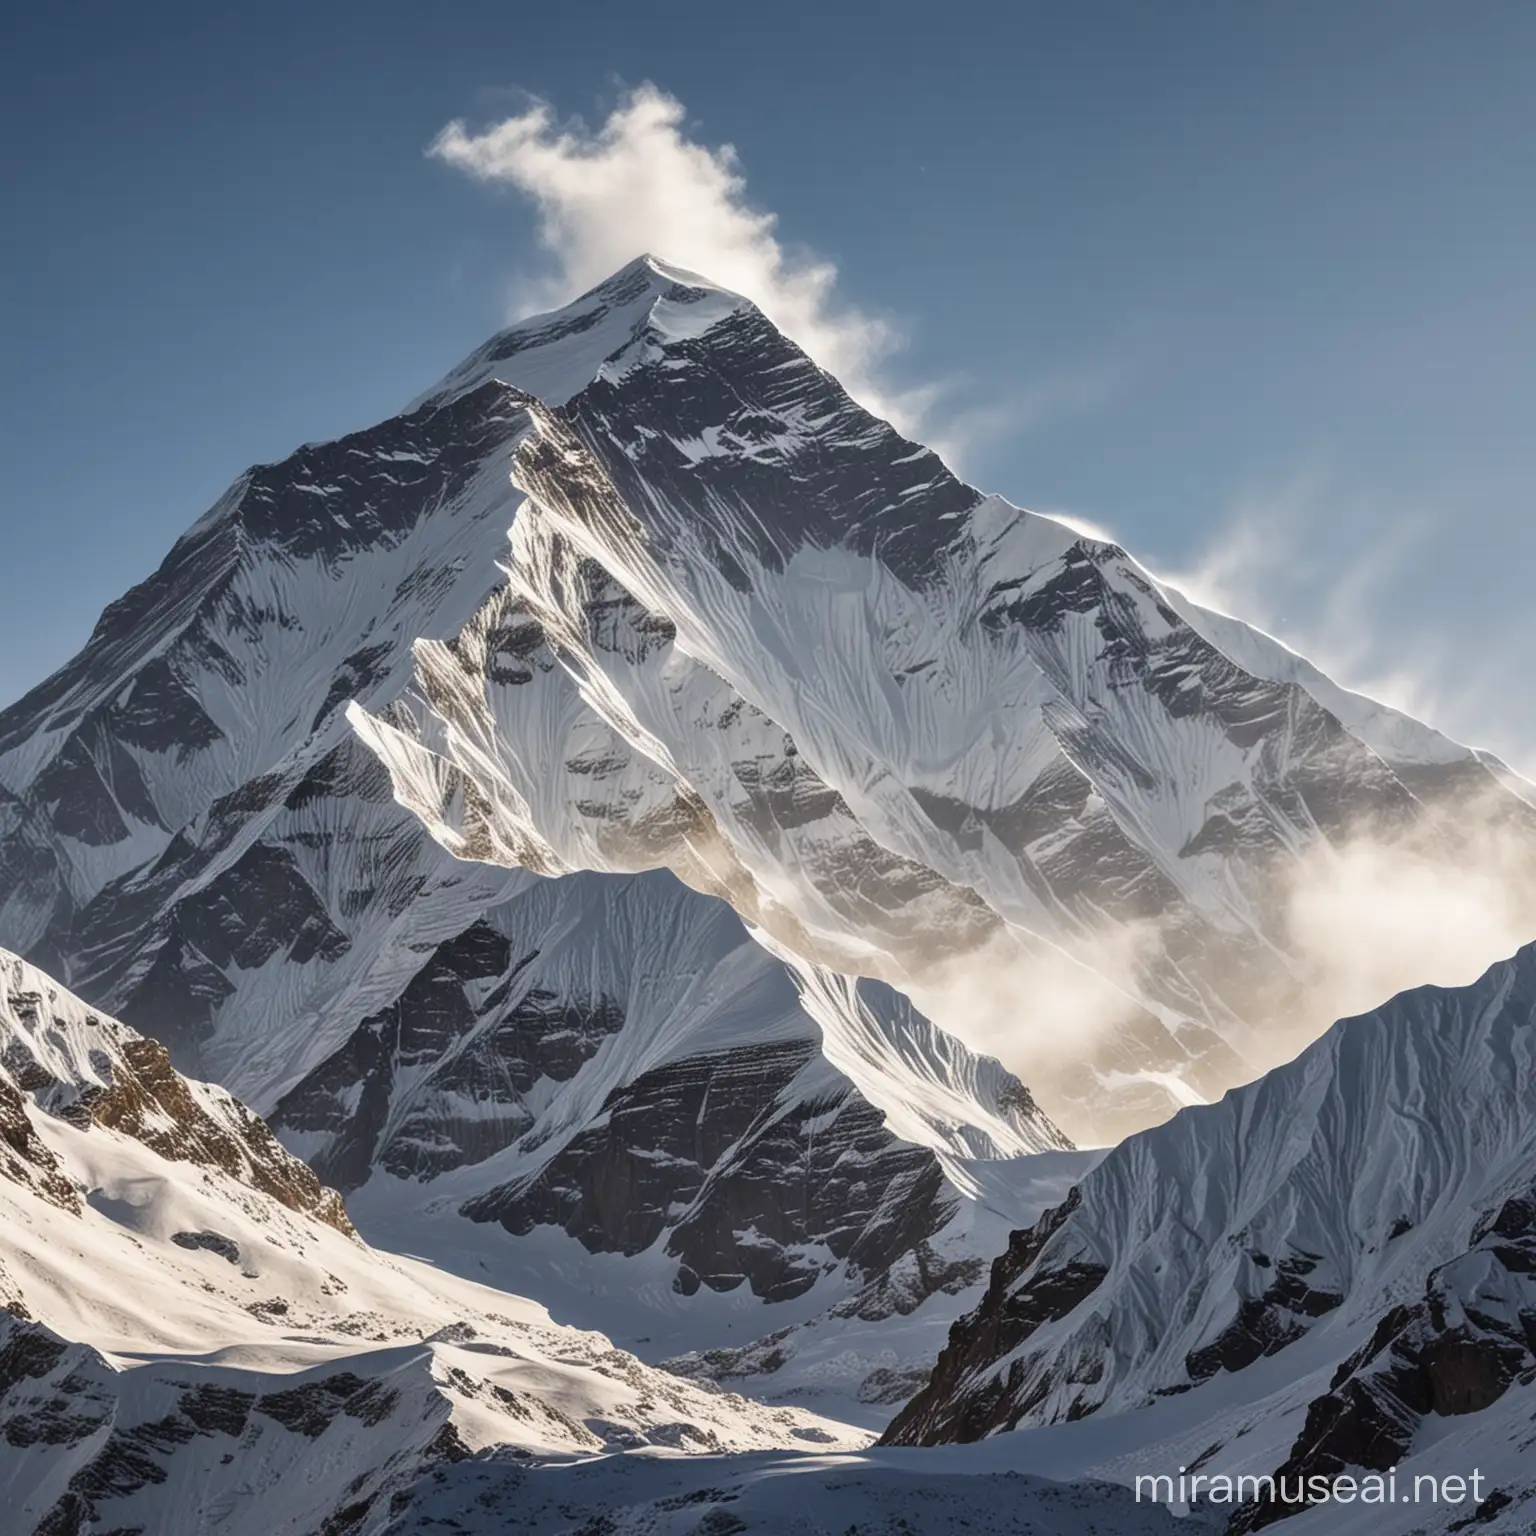 大雪纷飞日照珠穆朗玛峰的壮丽景象